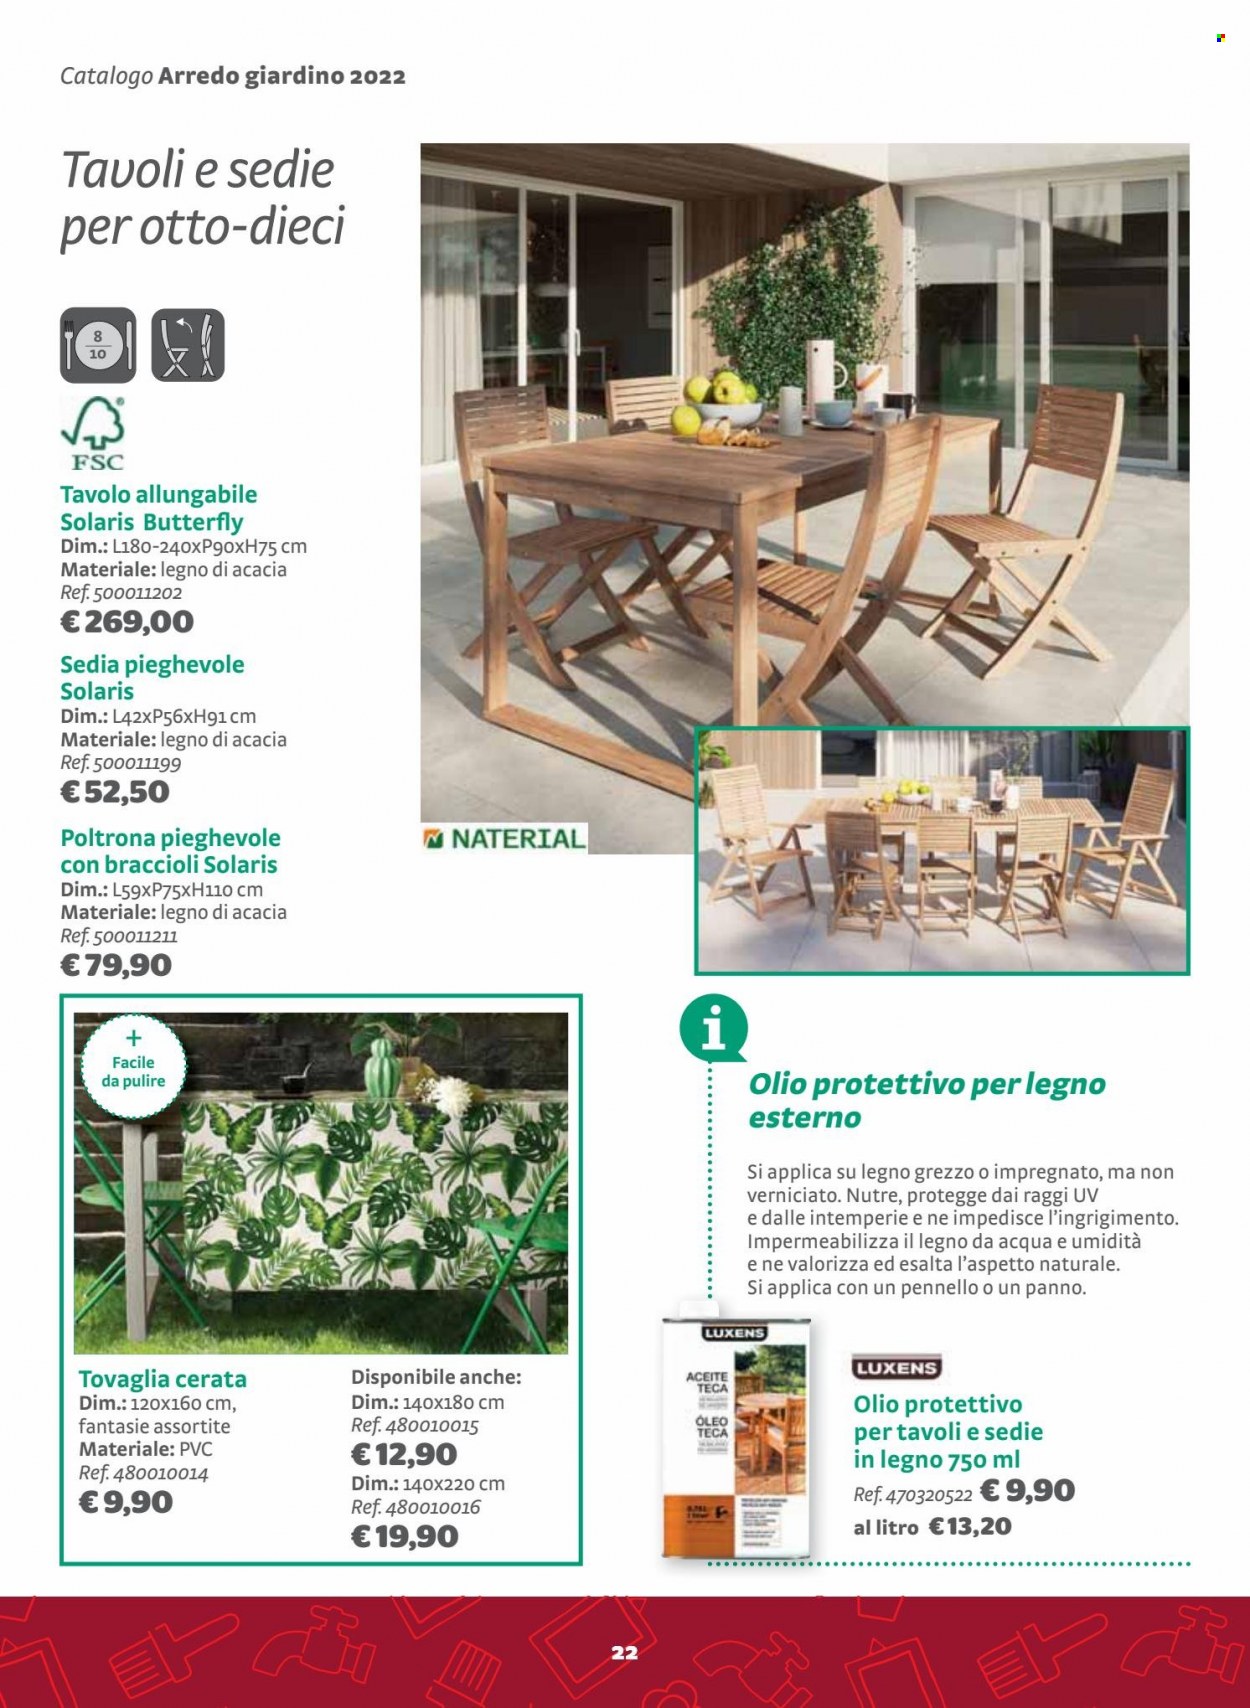 thumbnail - Volantino Bricocenter - 22/5/2022 - 31/5/2022 - Prodotti in offerta - poltrona, tavolo, tovaglia, sedia pieghevole, olio protettivo per legno. Pagina 22.